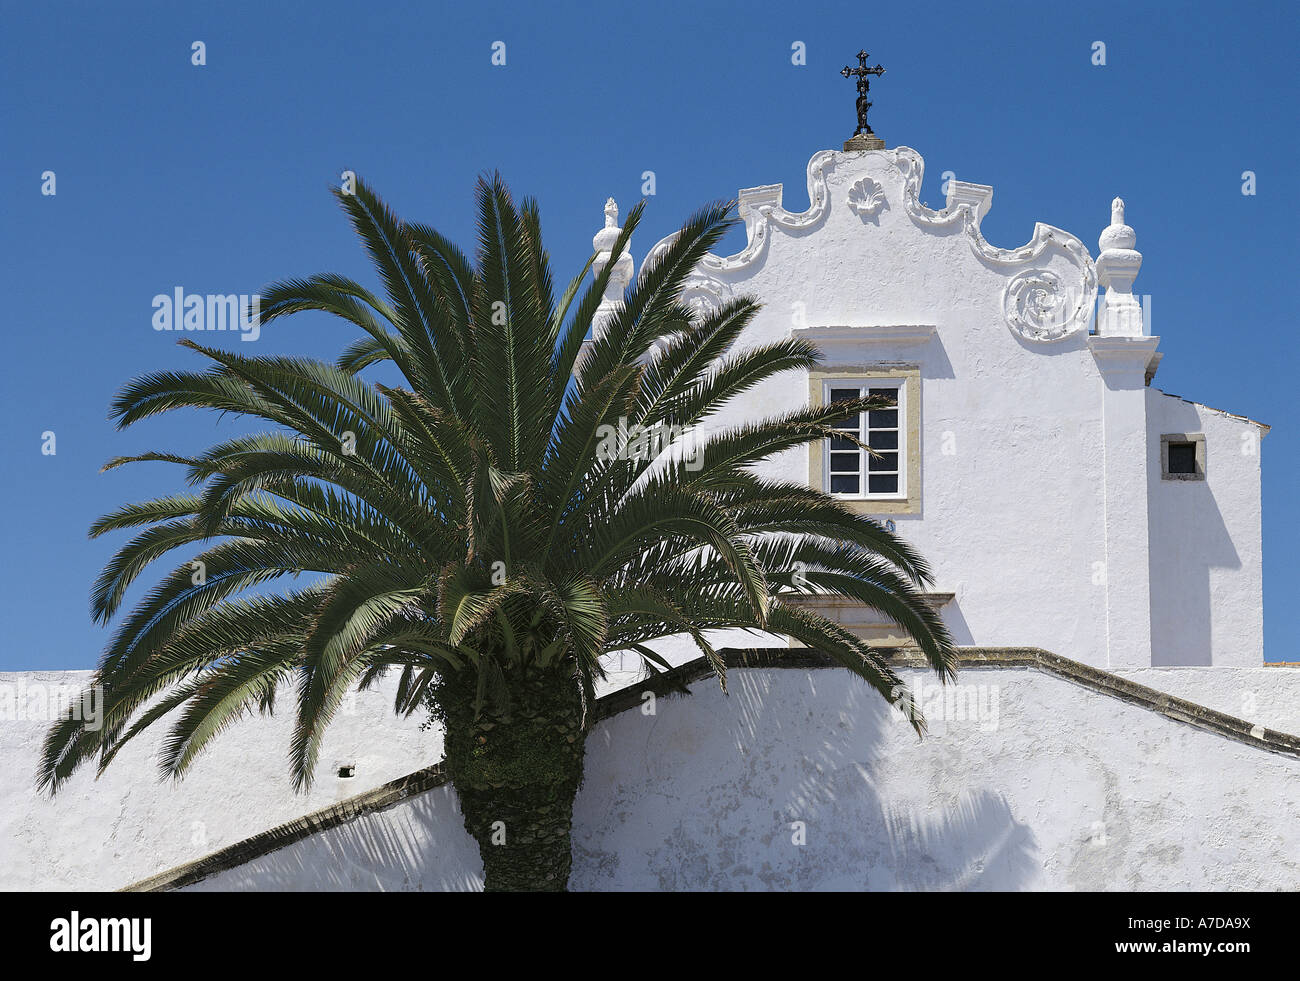 Église d'Albufeira et de palmier, de l'Algarve, Portugal Banque D'Images